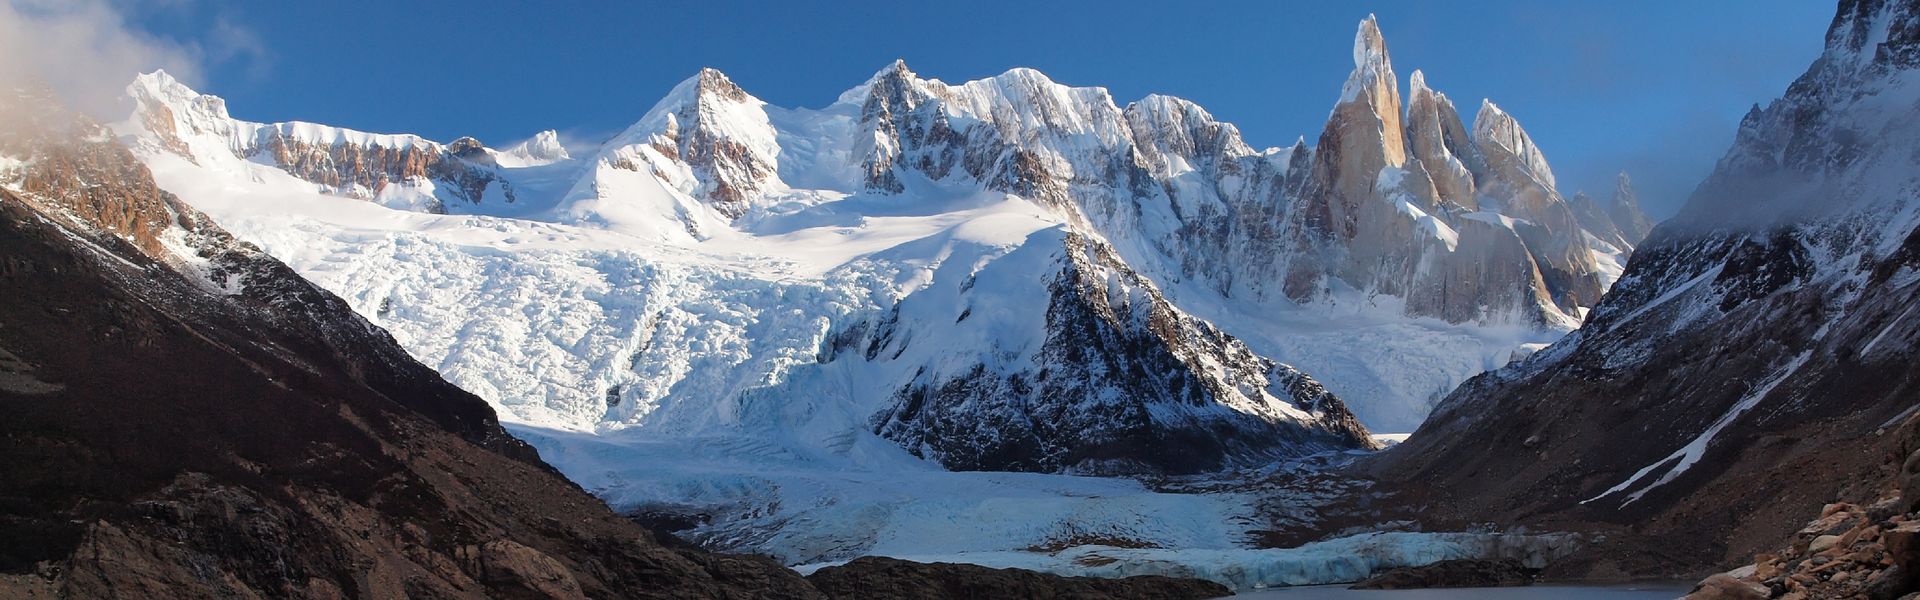 Cerro Torre - Patagonie - Argentine